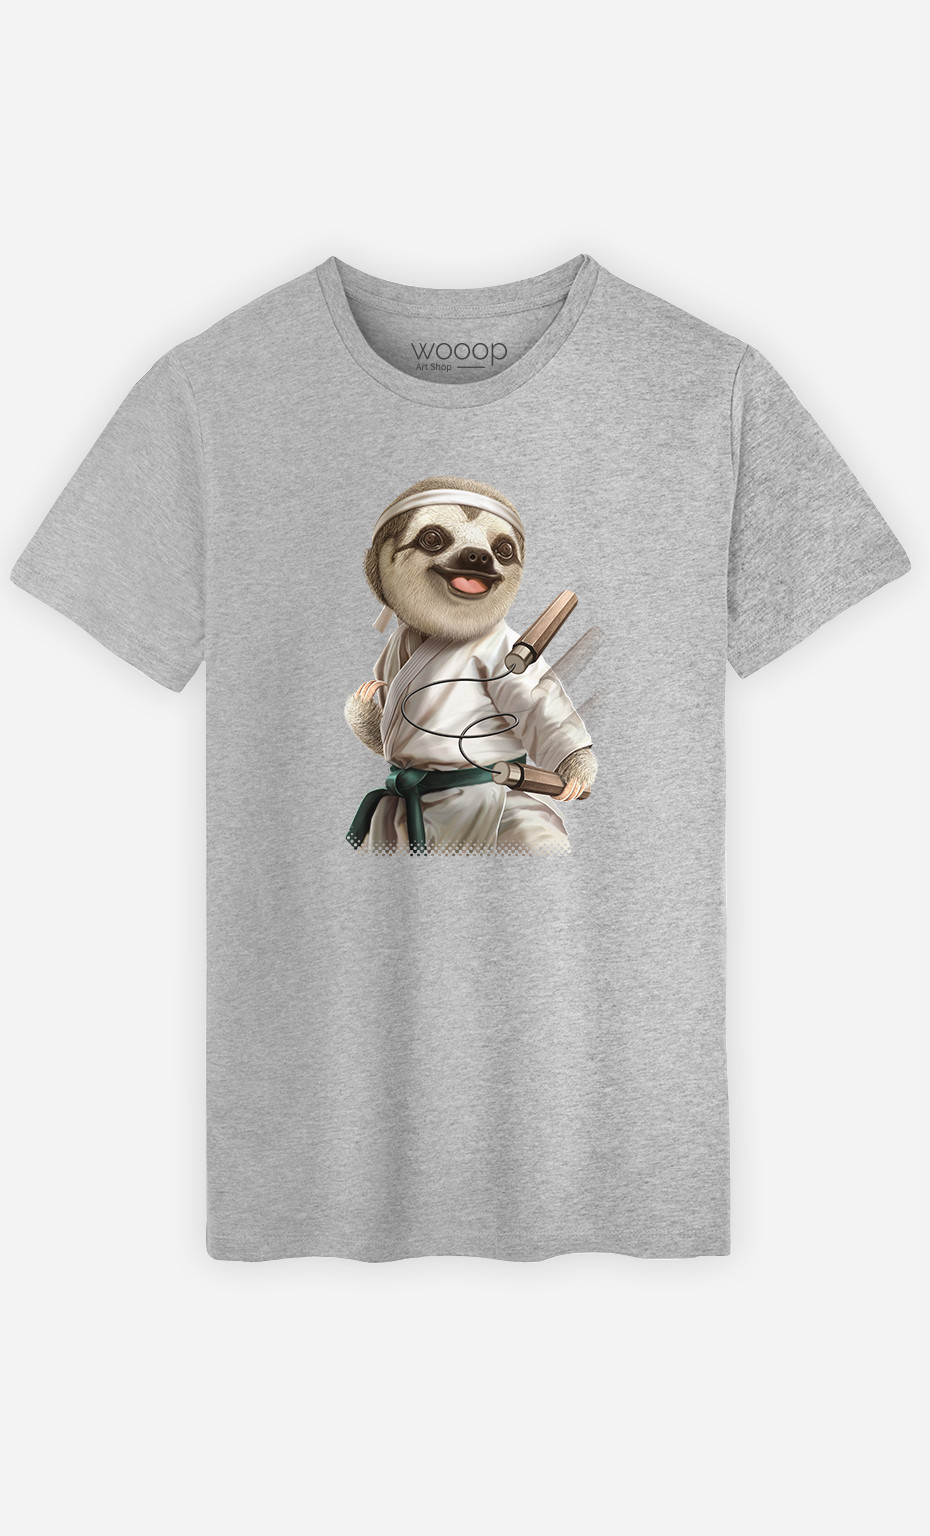 T-shirt Man Karate Sloth